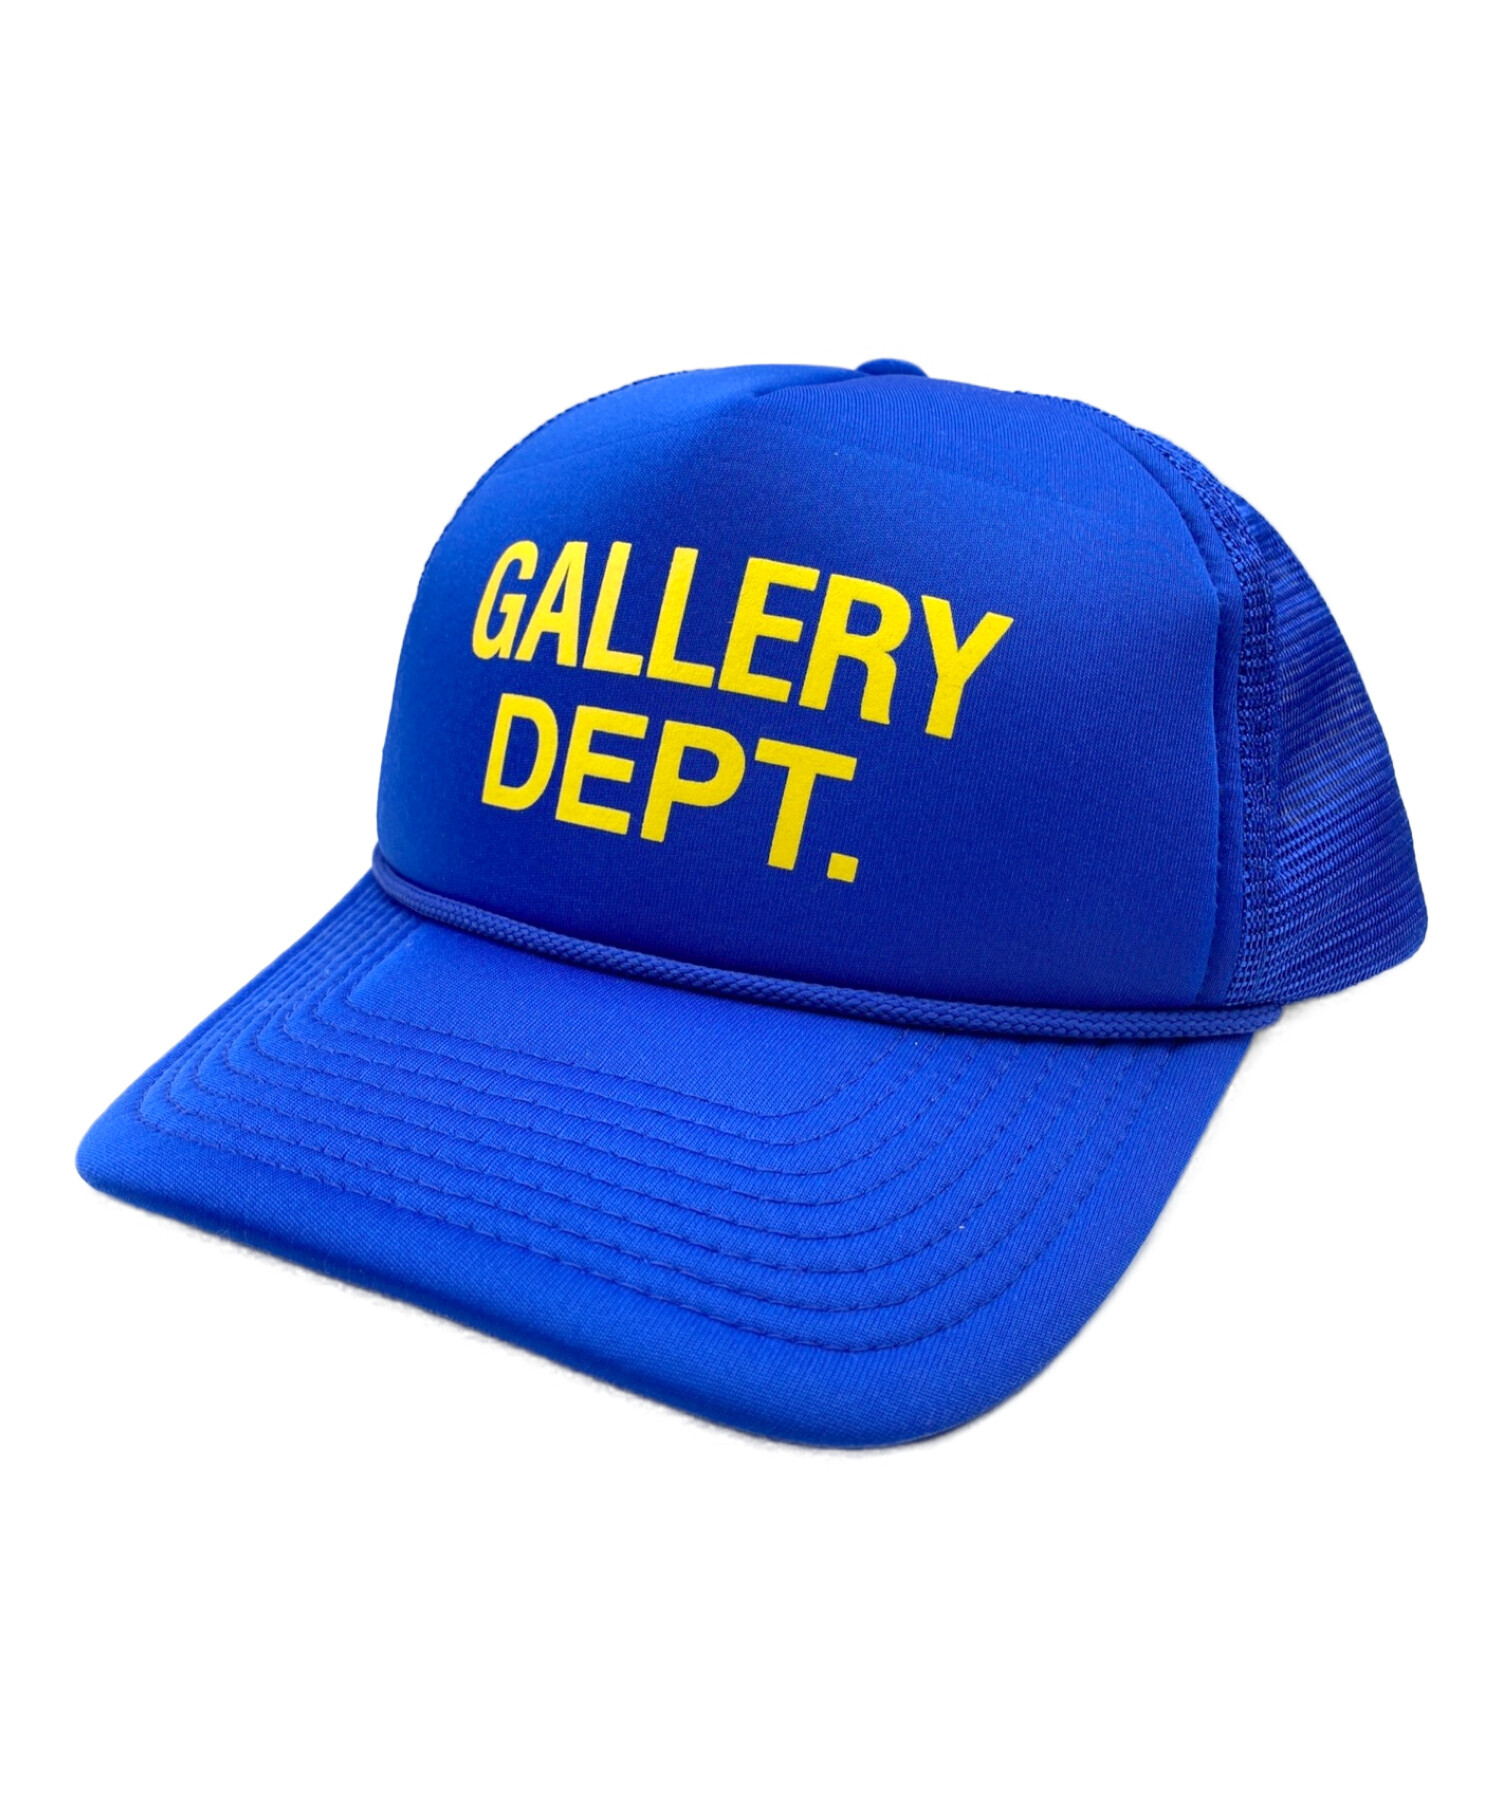 ブティック商品 GALLERY DEPT TRUCKER CAP ギャラリーデプト ネイビー